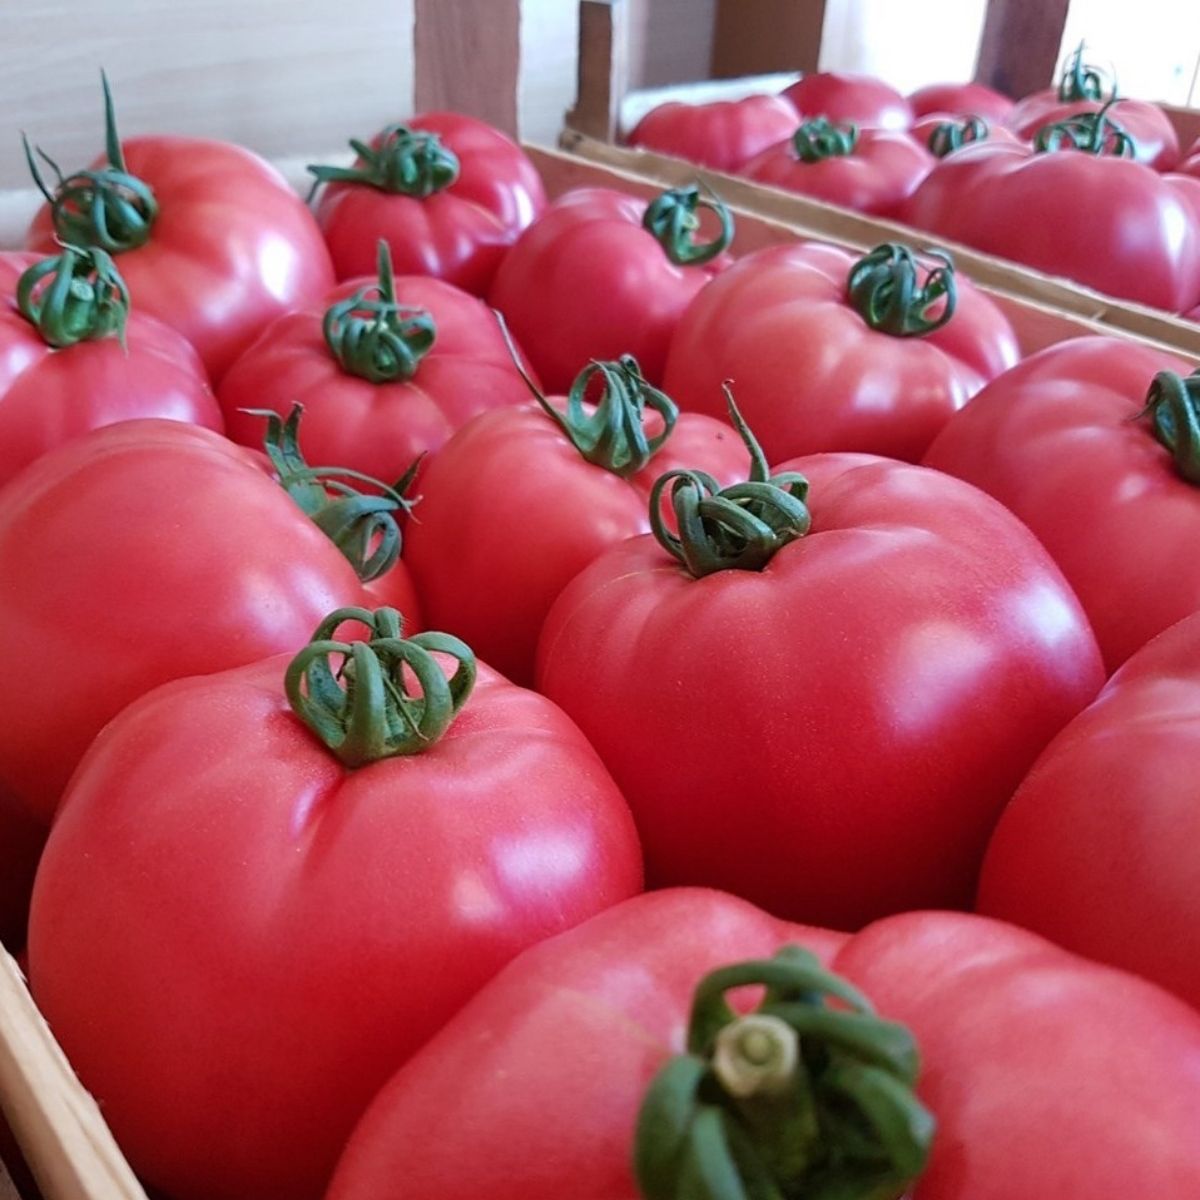 Tomate - Seminte de tomate PINK ROCK F1, 1000 seminte, YUKSEL, hectarul.ro